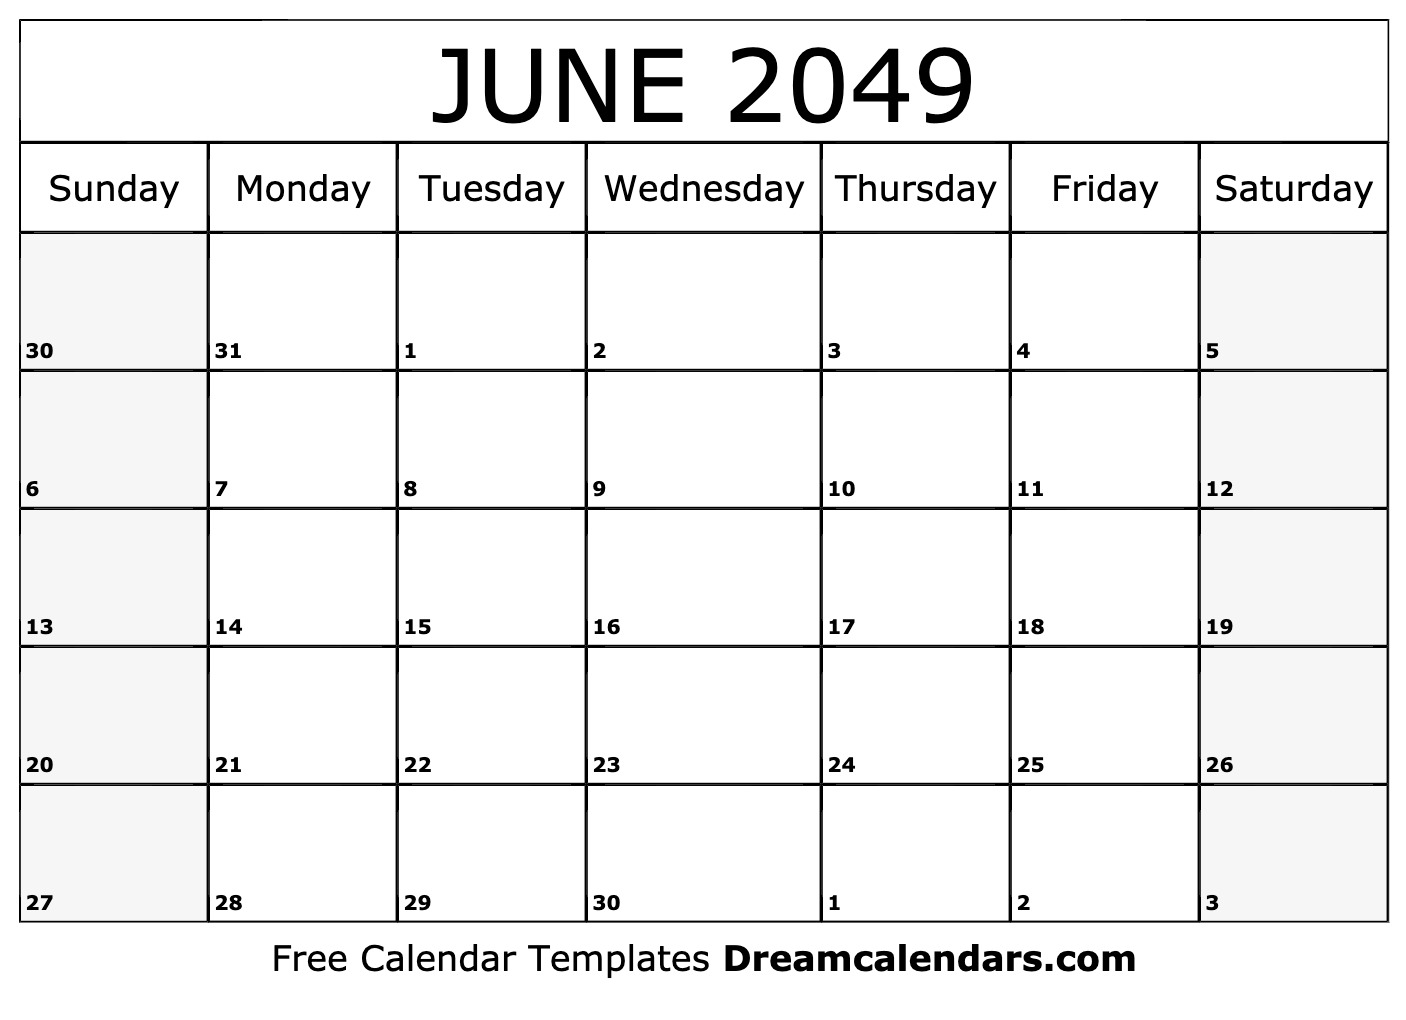 Download Printable June 2049 Calendars